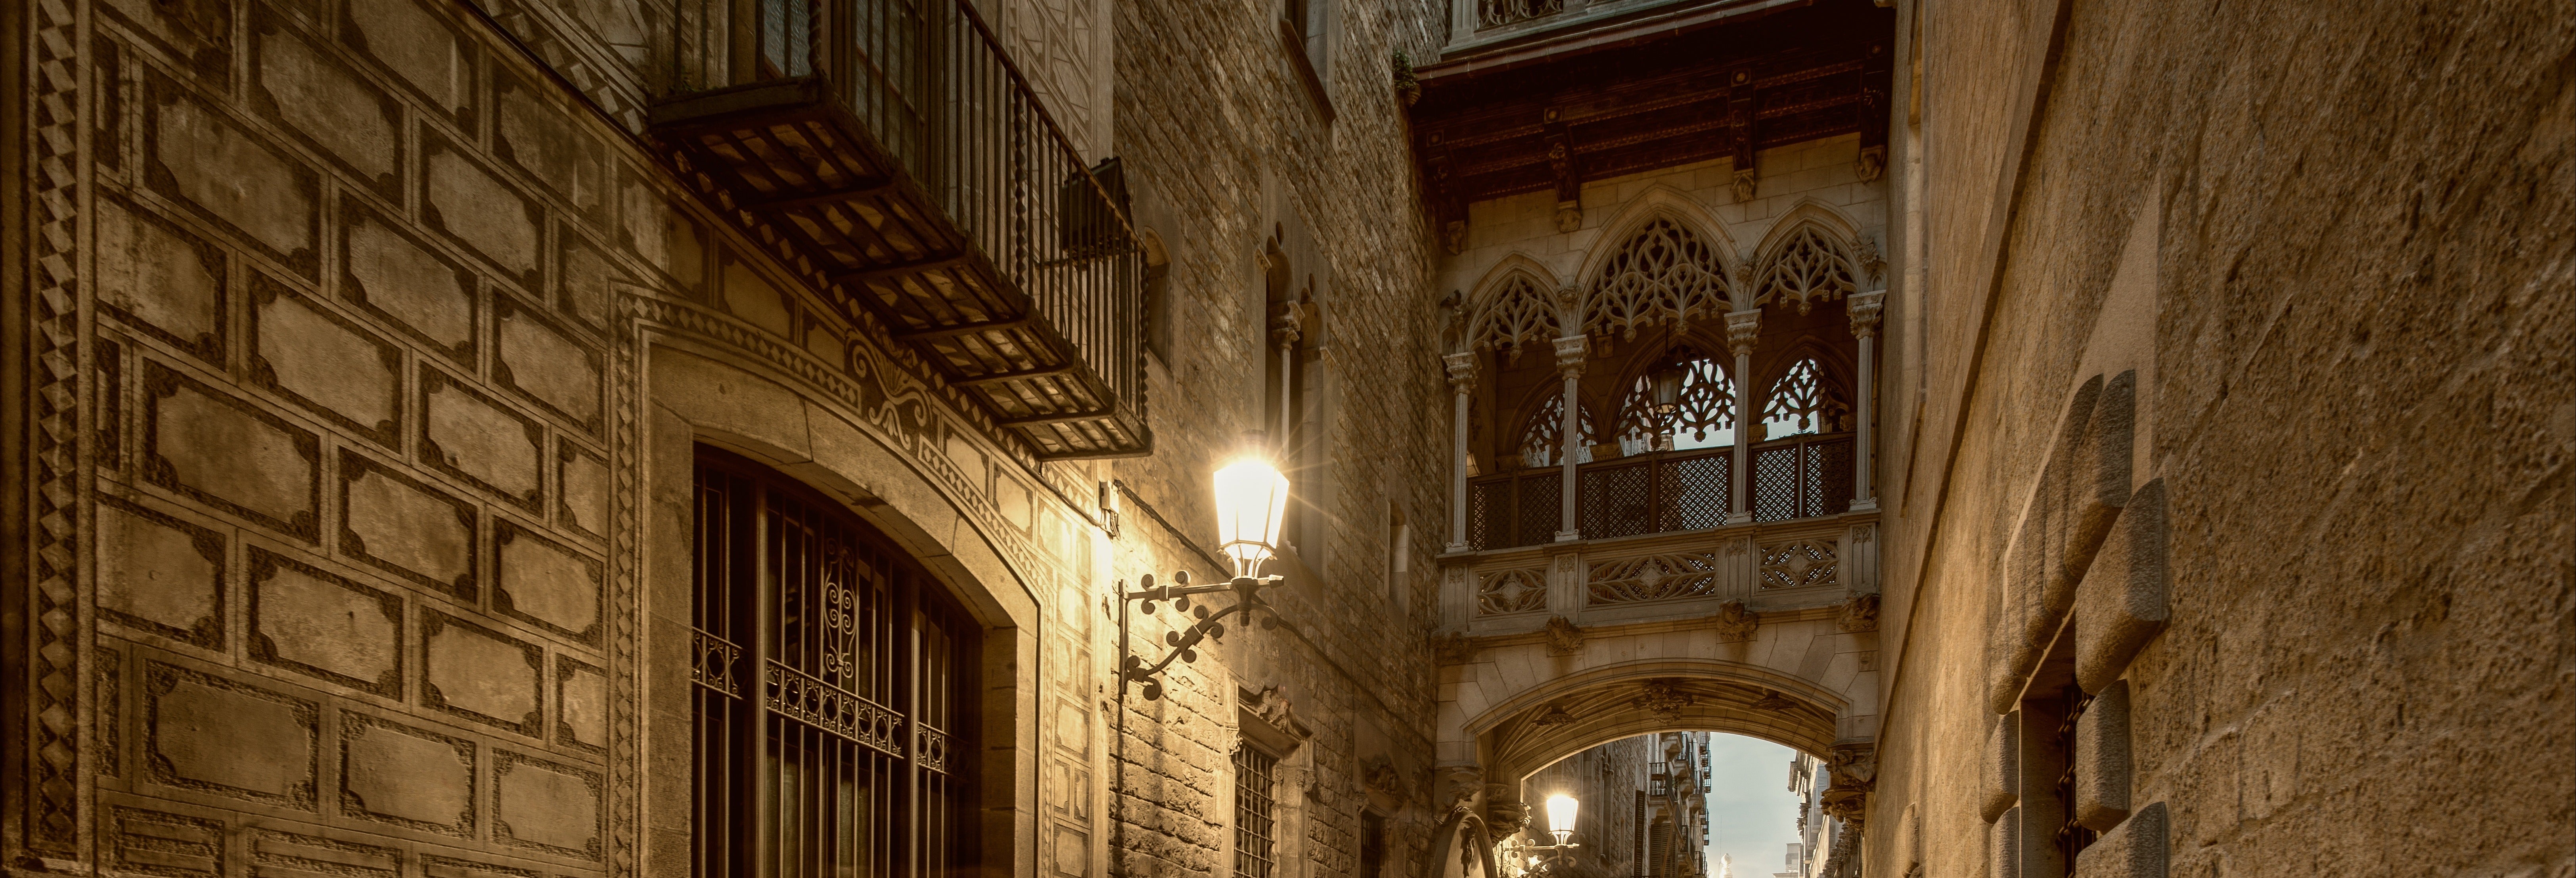 Barcelona Gothic Quarter Free Night Tour